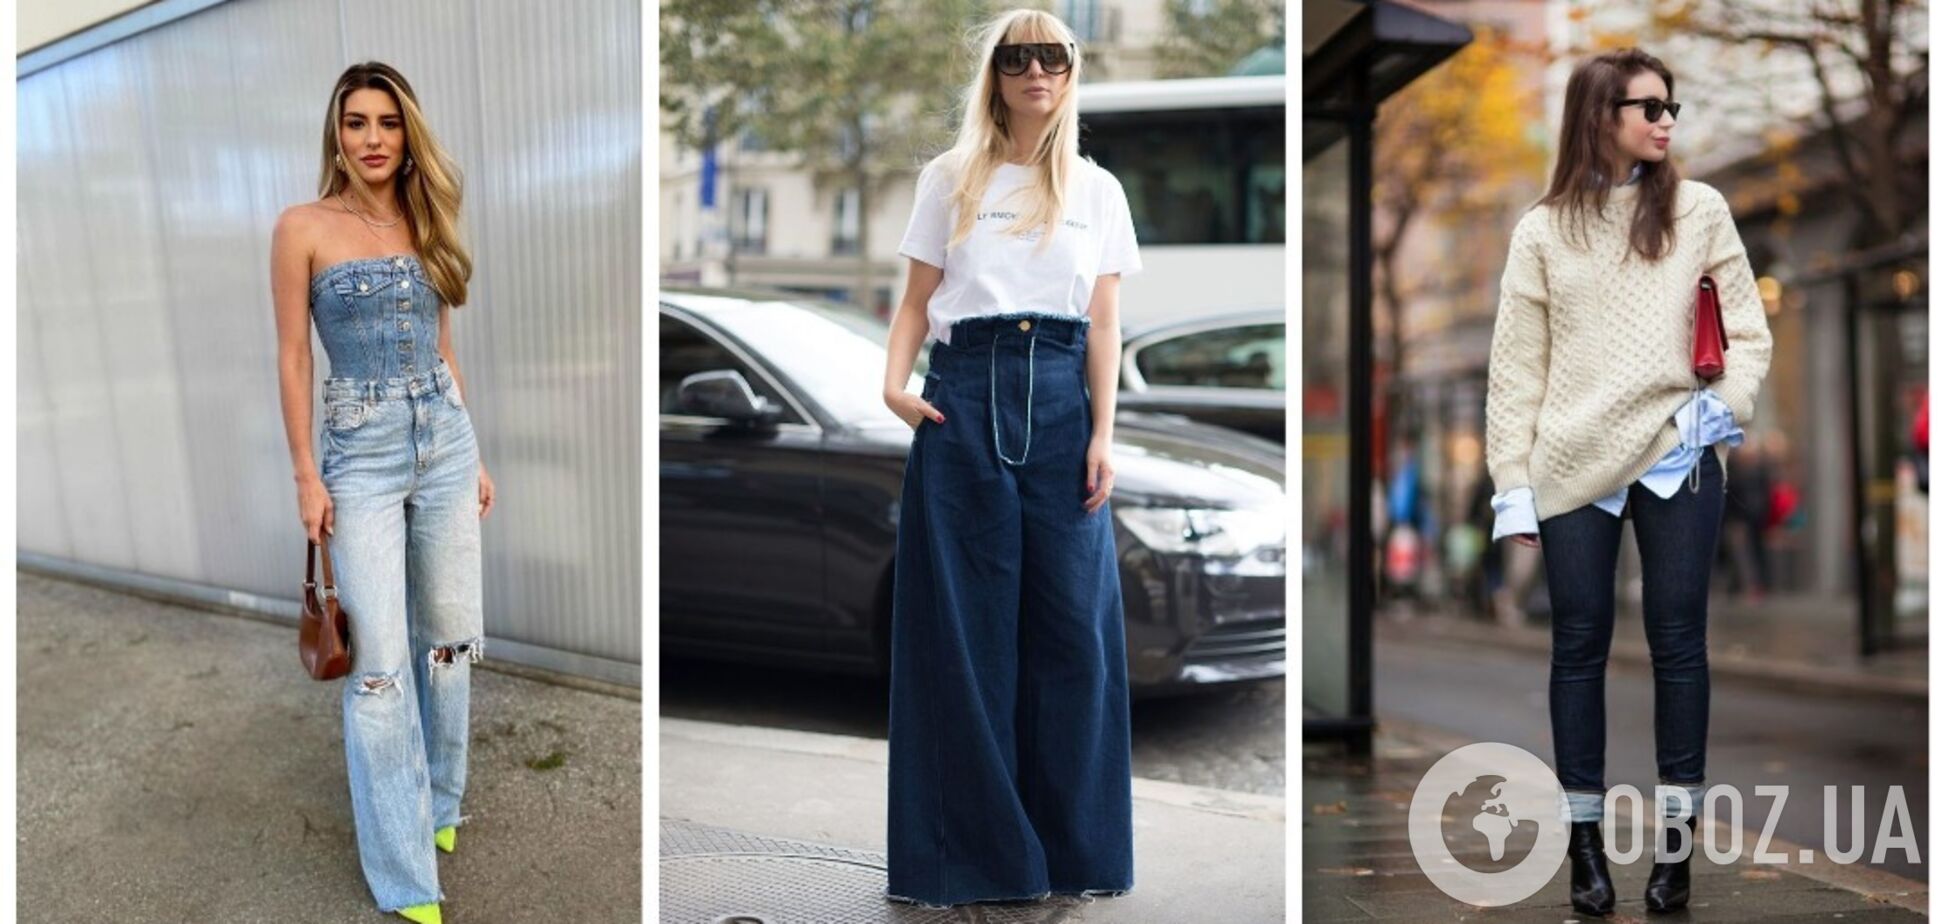 Ніколи їх не носіть! 10 застарілих образів джинсів, які давно вийшли з моди